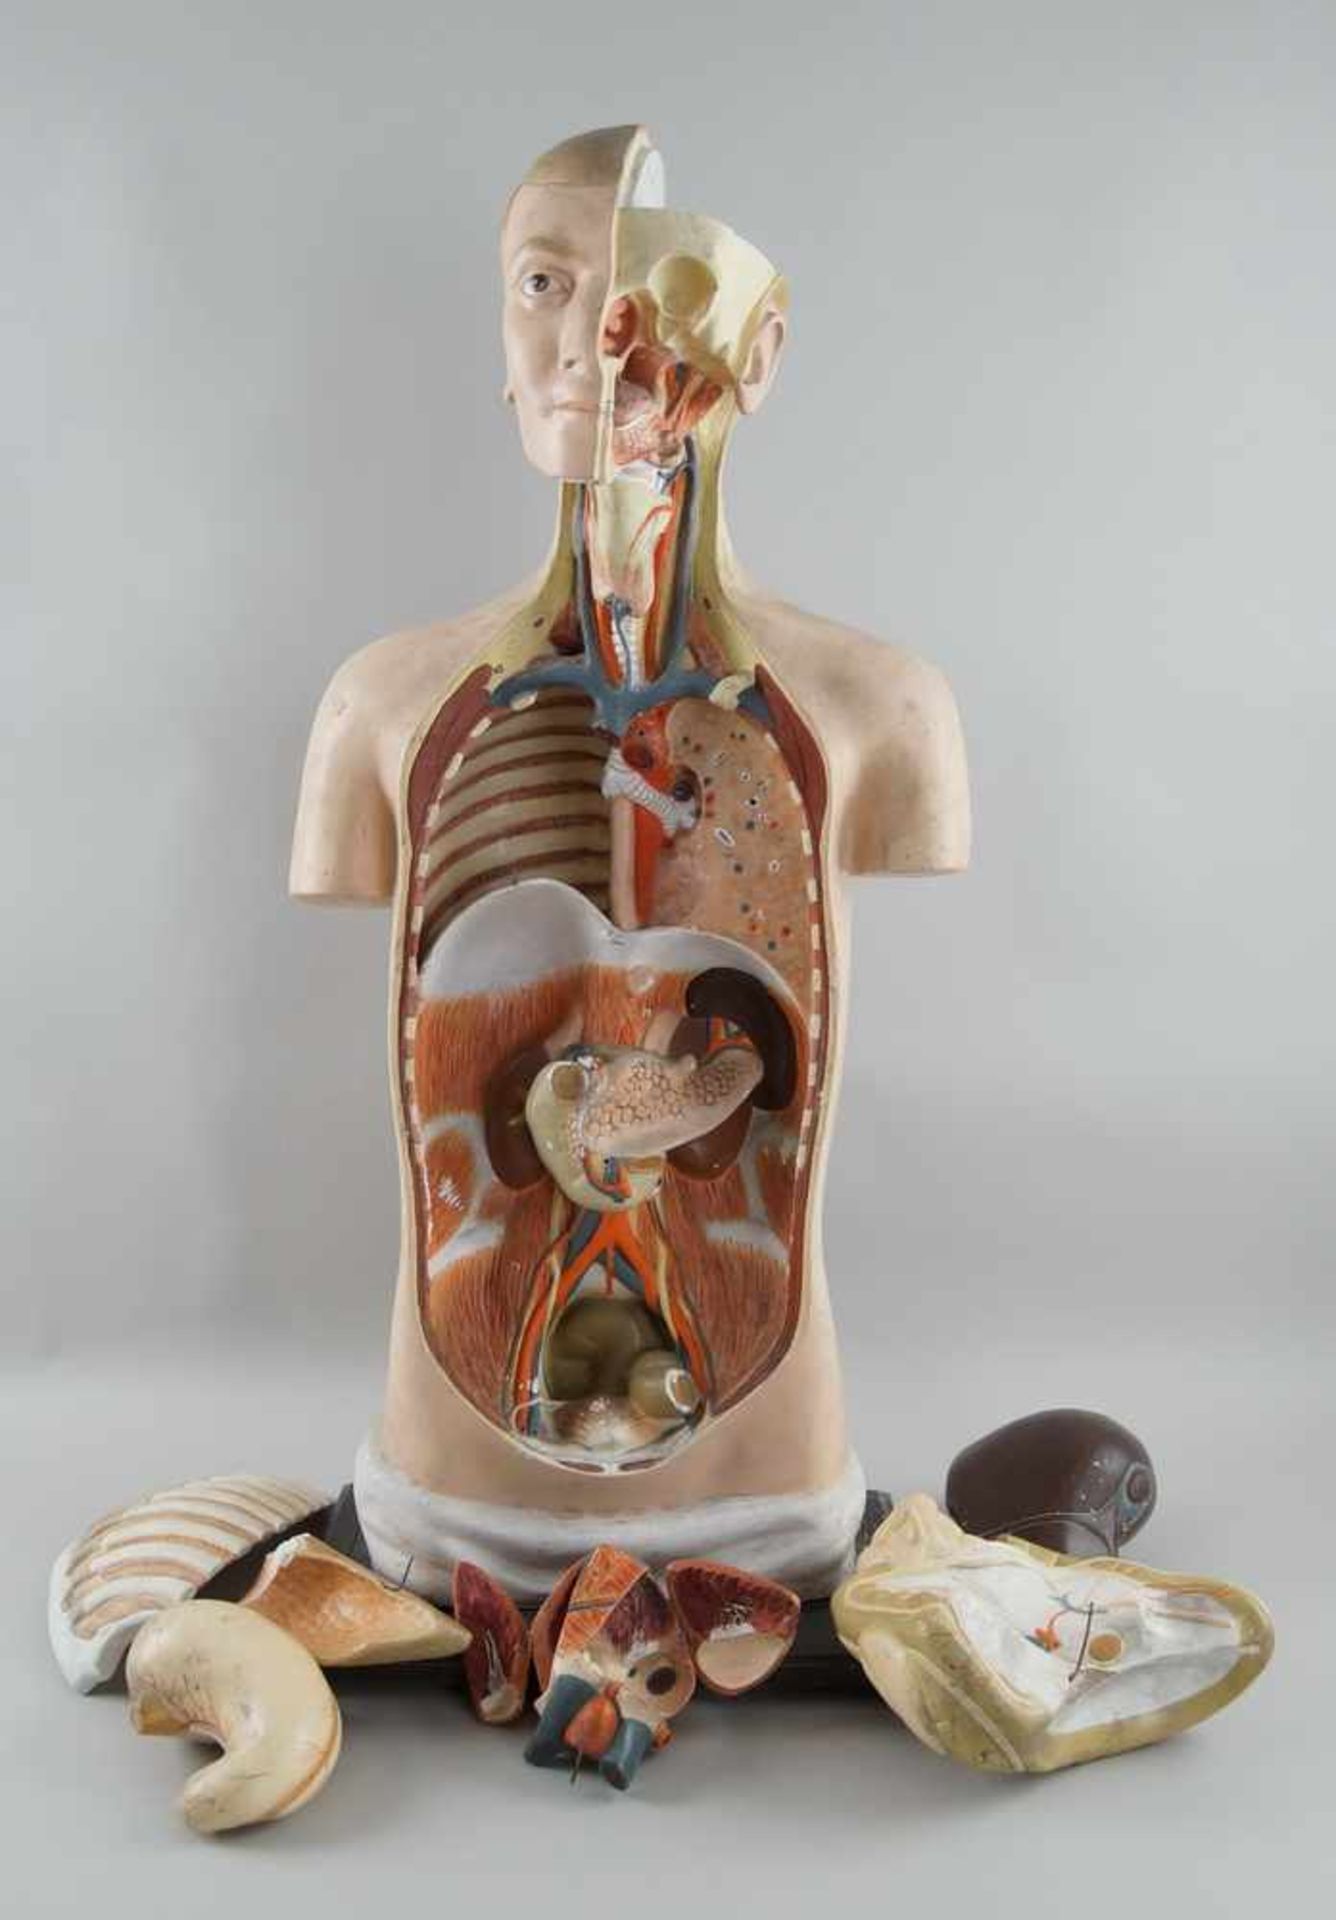 Anatomisches Modell eines menschlichen Oberkörpers mit verschiedenen Organen,Altersspuren/